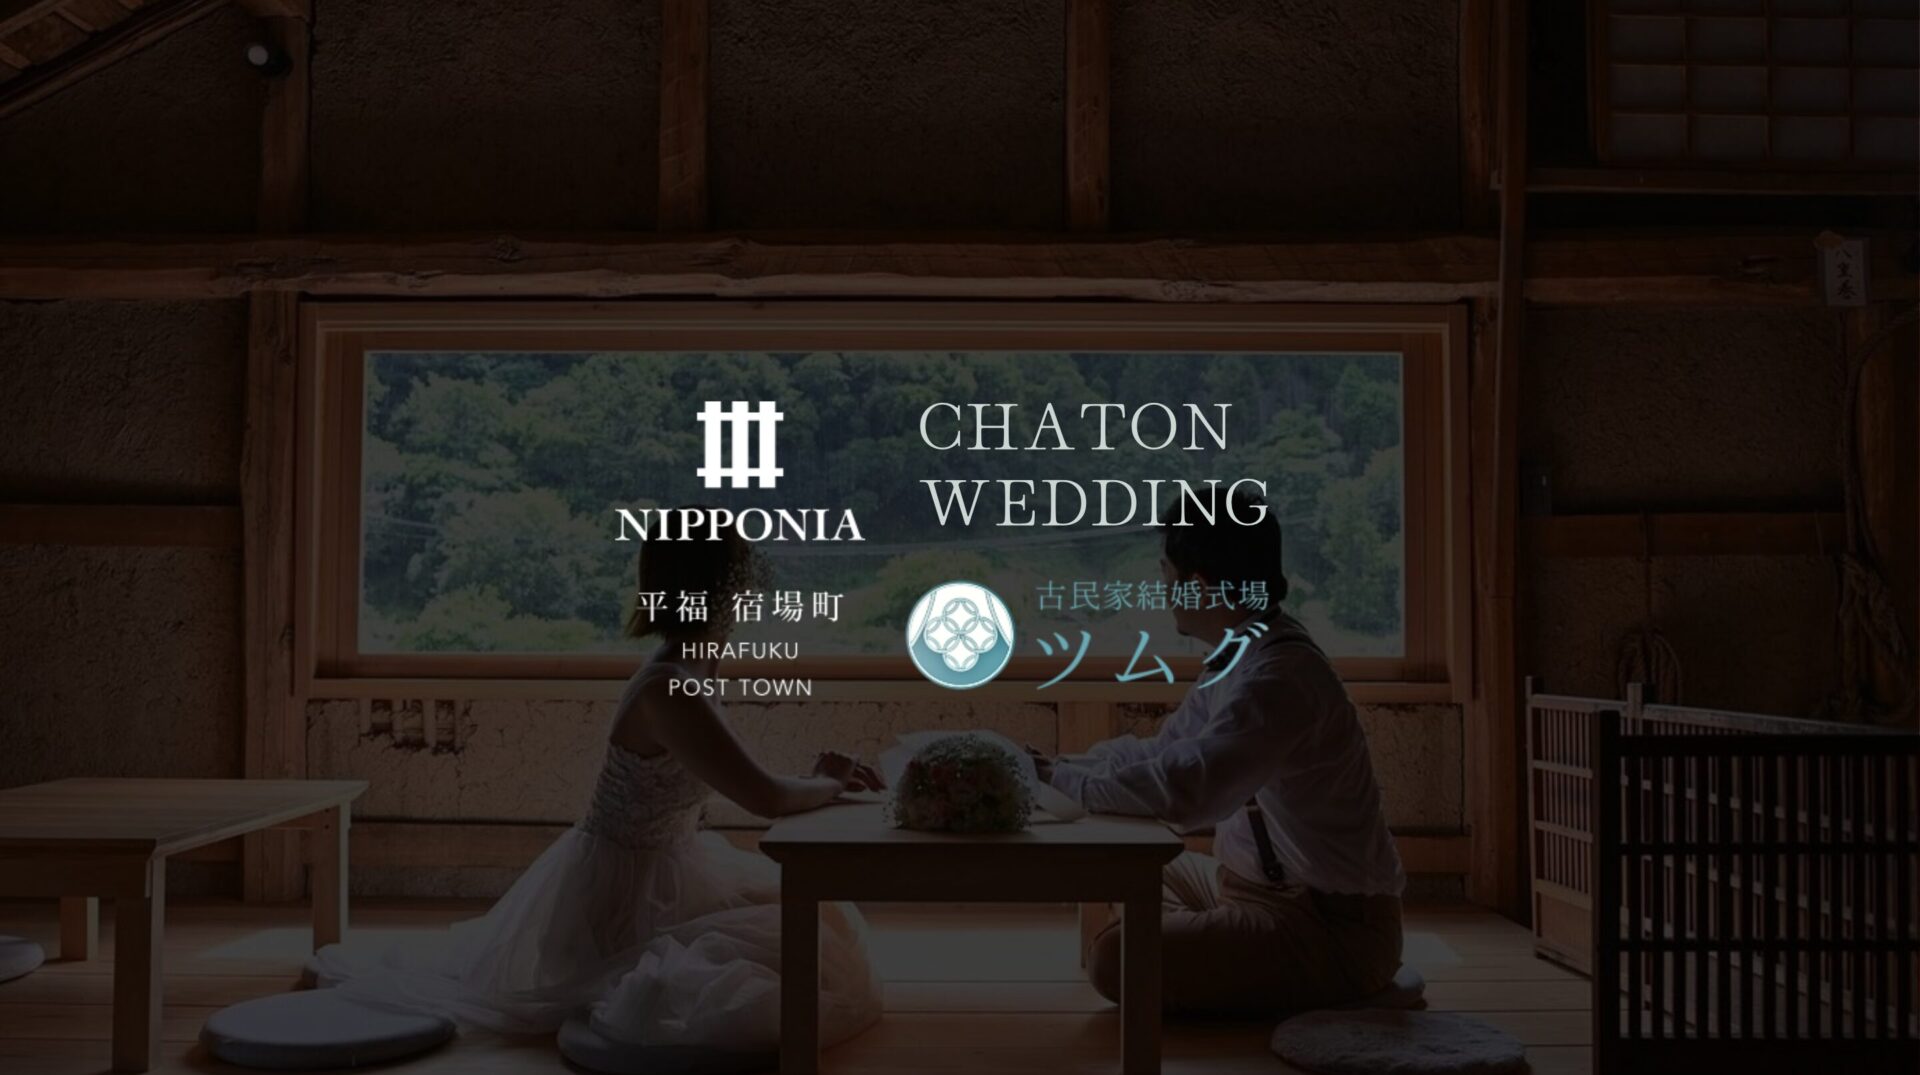 和モダンな空間で結婚式を。NIPPONIA平福宿場町のウェディング